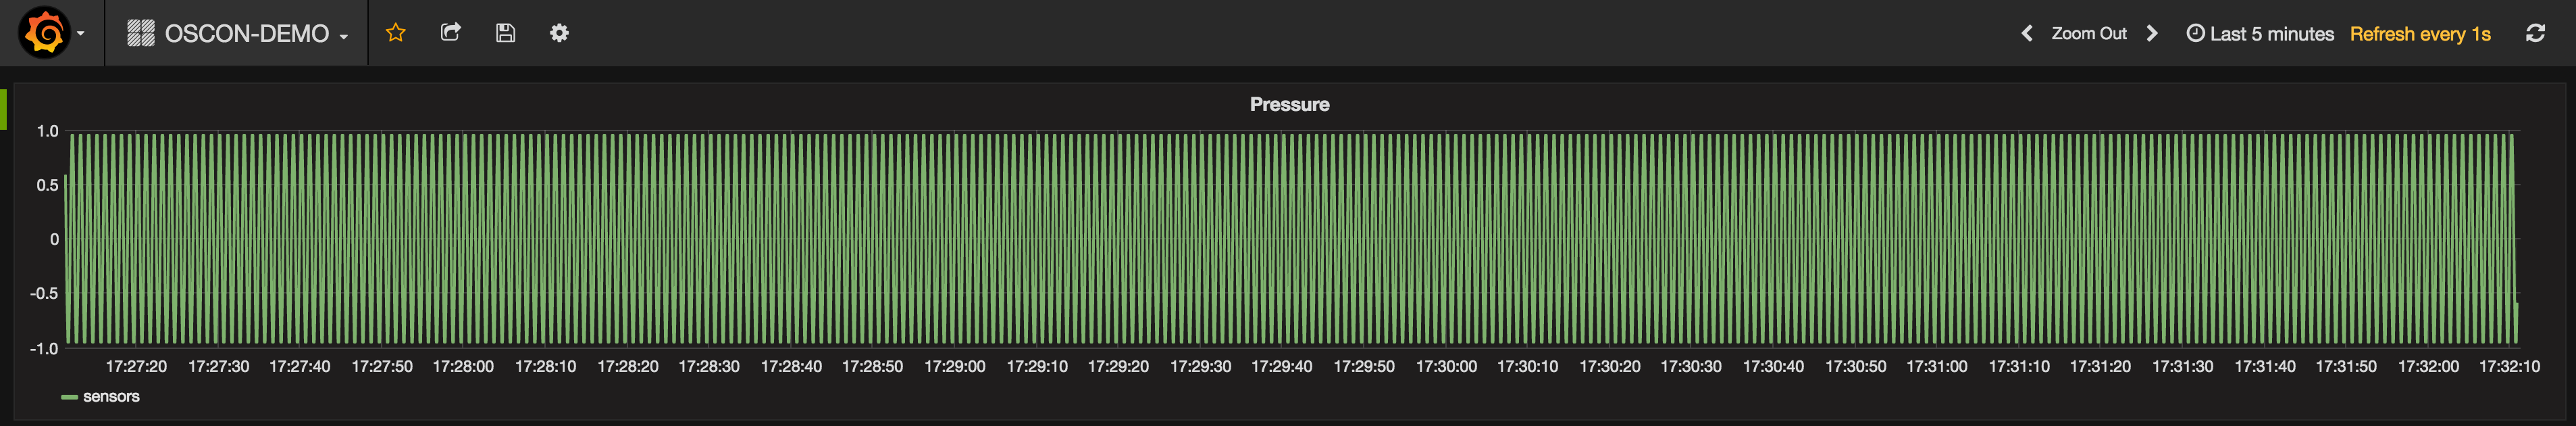 grafana-pressure-data-back